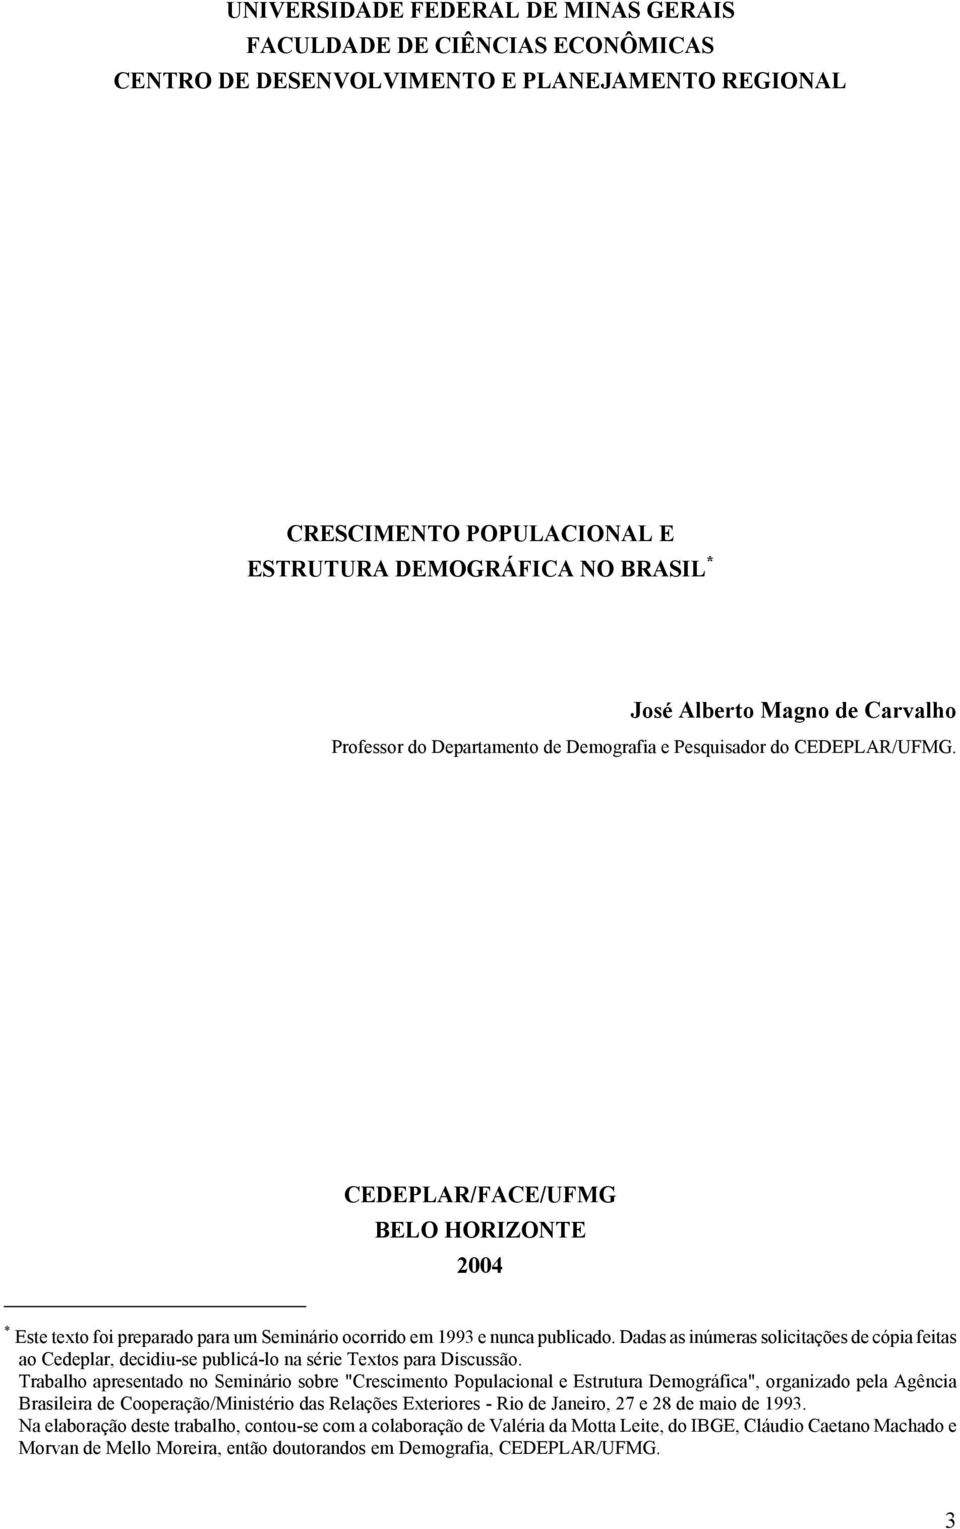 CEDEPLAR/FACE/UFMG BELO HORIZONTE 2004 * Este texto foi preparado para um Seminário ocorrido em 1993 e nunca publicado.